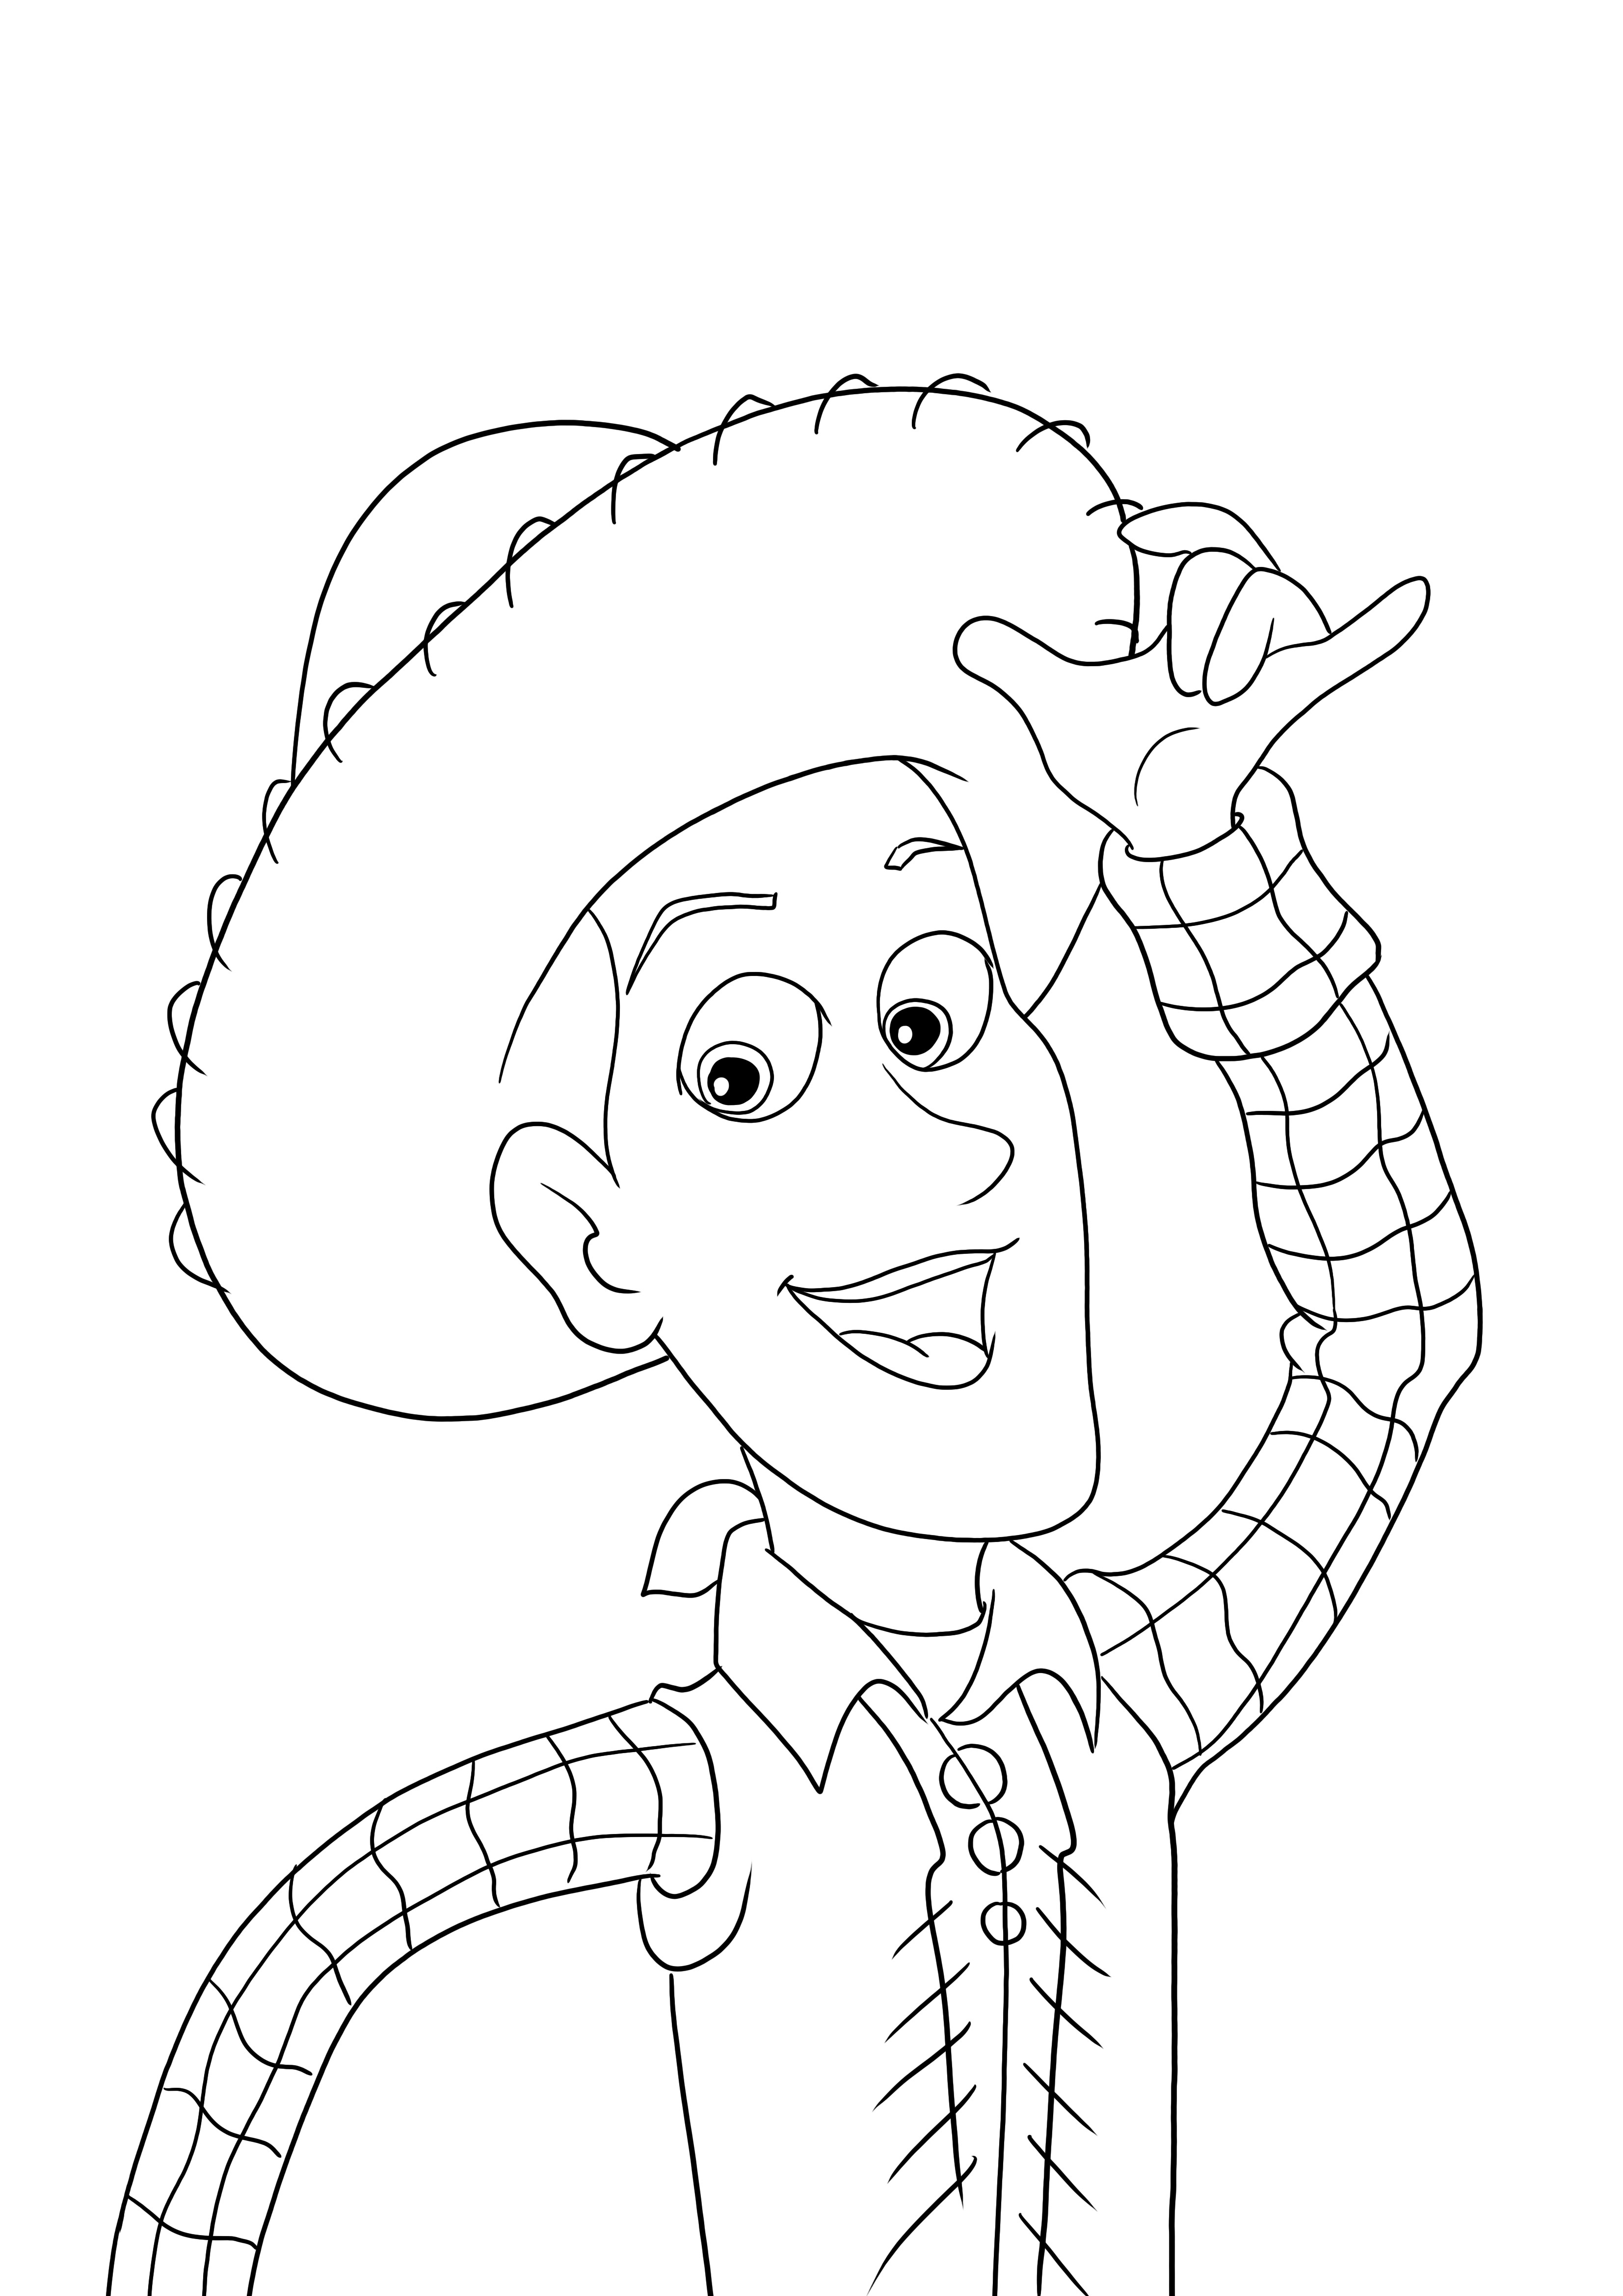 Personaje Woody de la película Toy Story para descargar o imprimir gratis y colorear